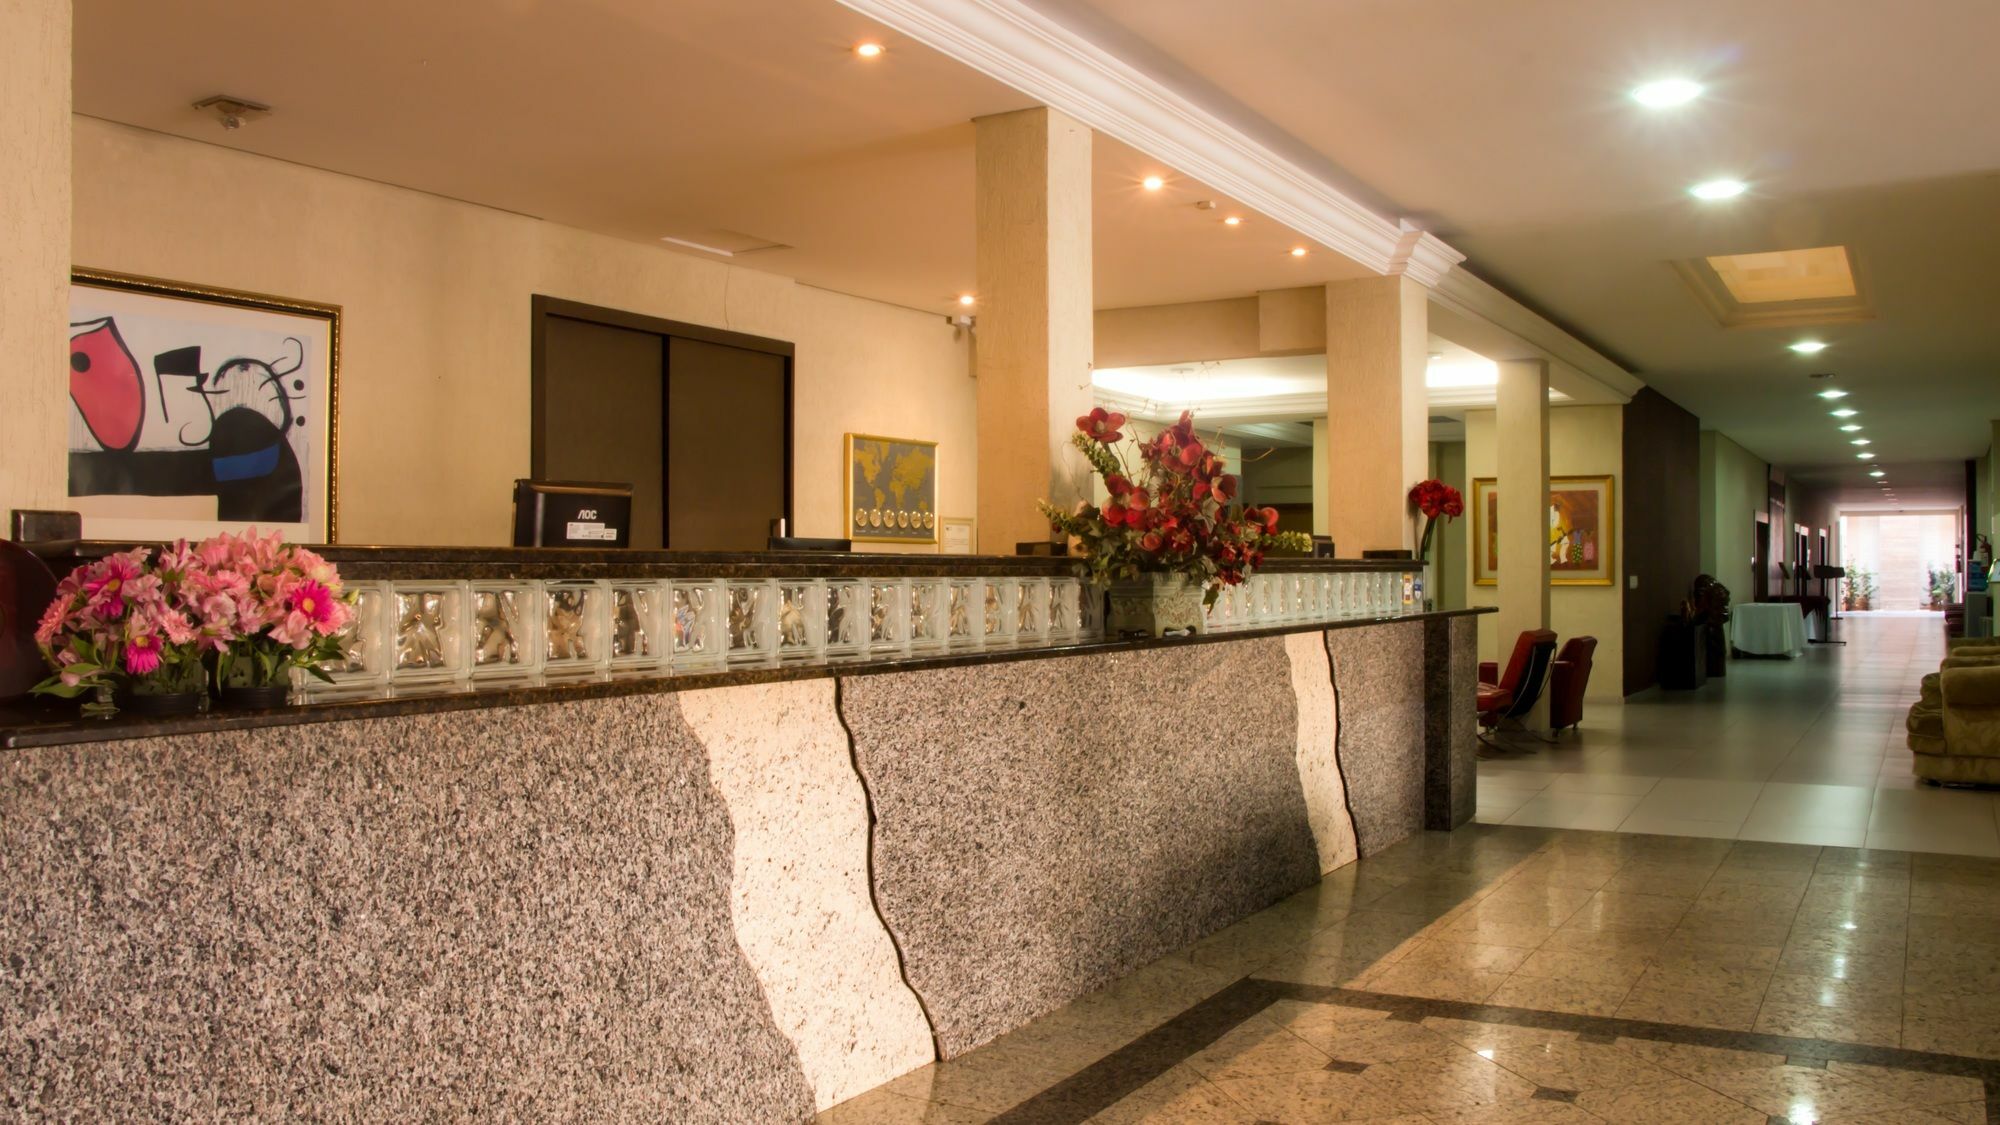 Hotel פוז דו איגואסו מראה חיצוני תמונה